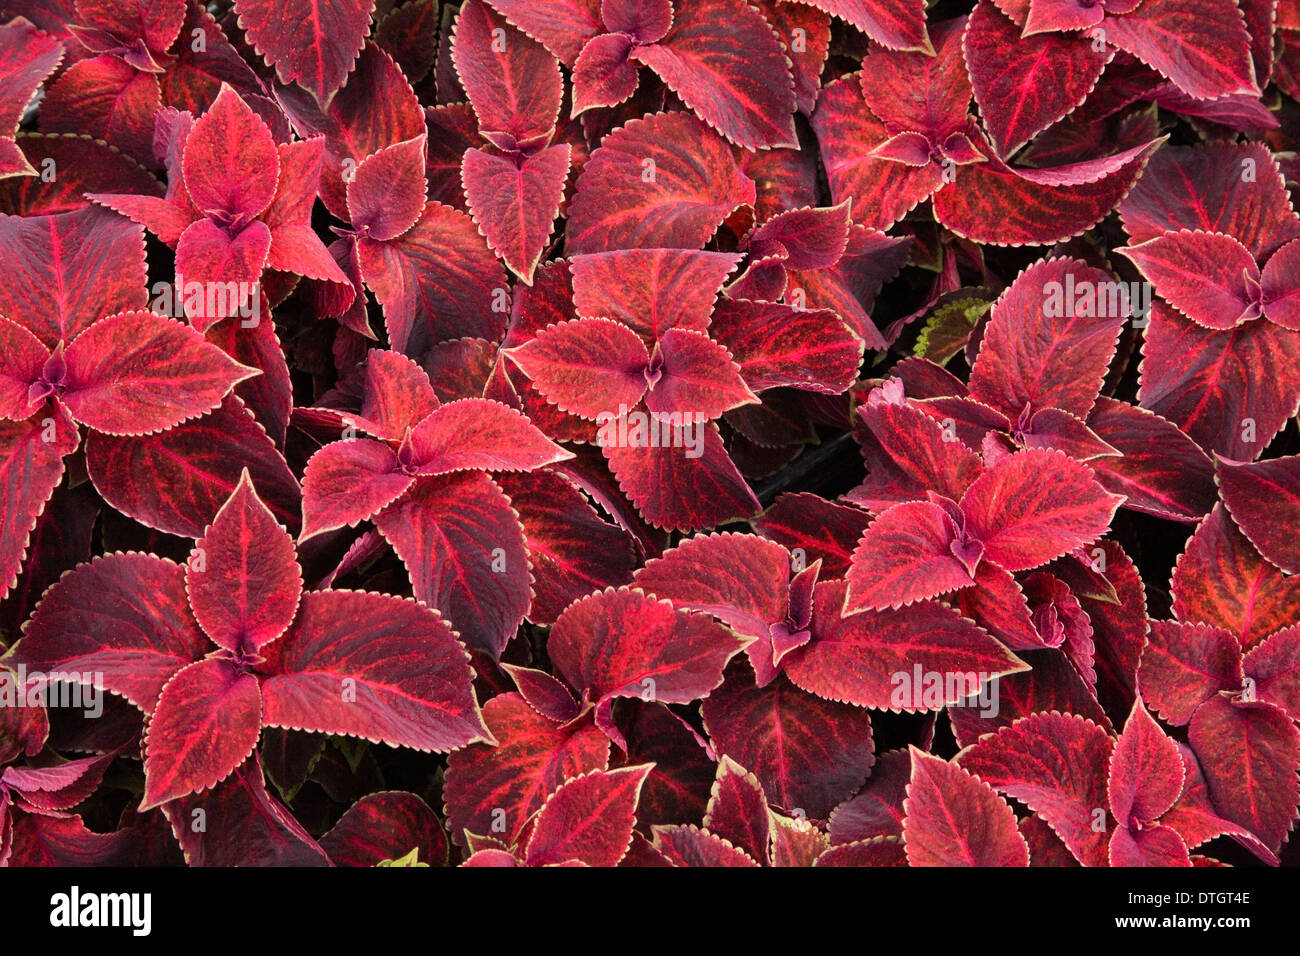 Red Coleus (Solenostemon sp.) leaves, Ontario, Canada Stock Photo